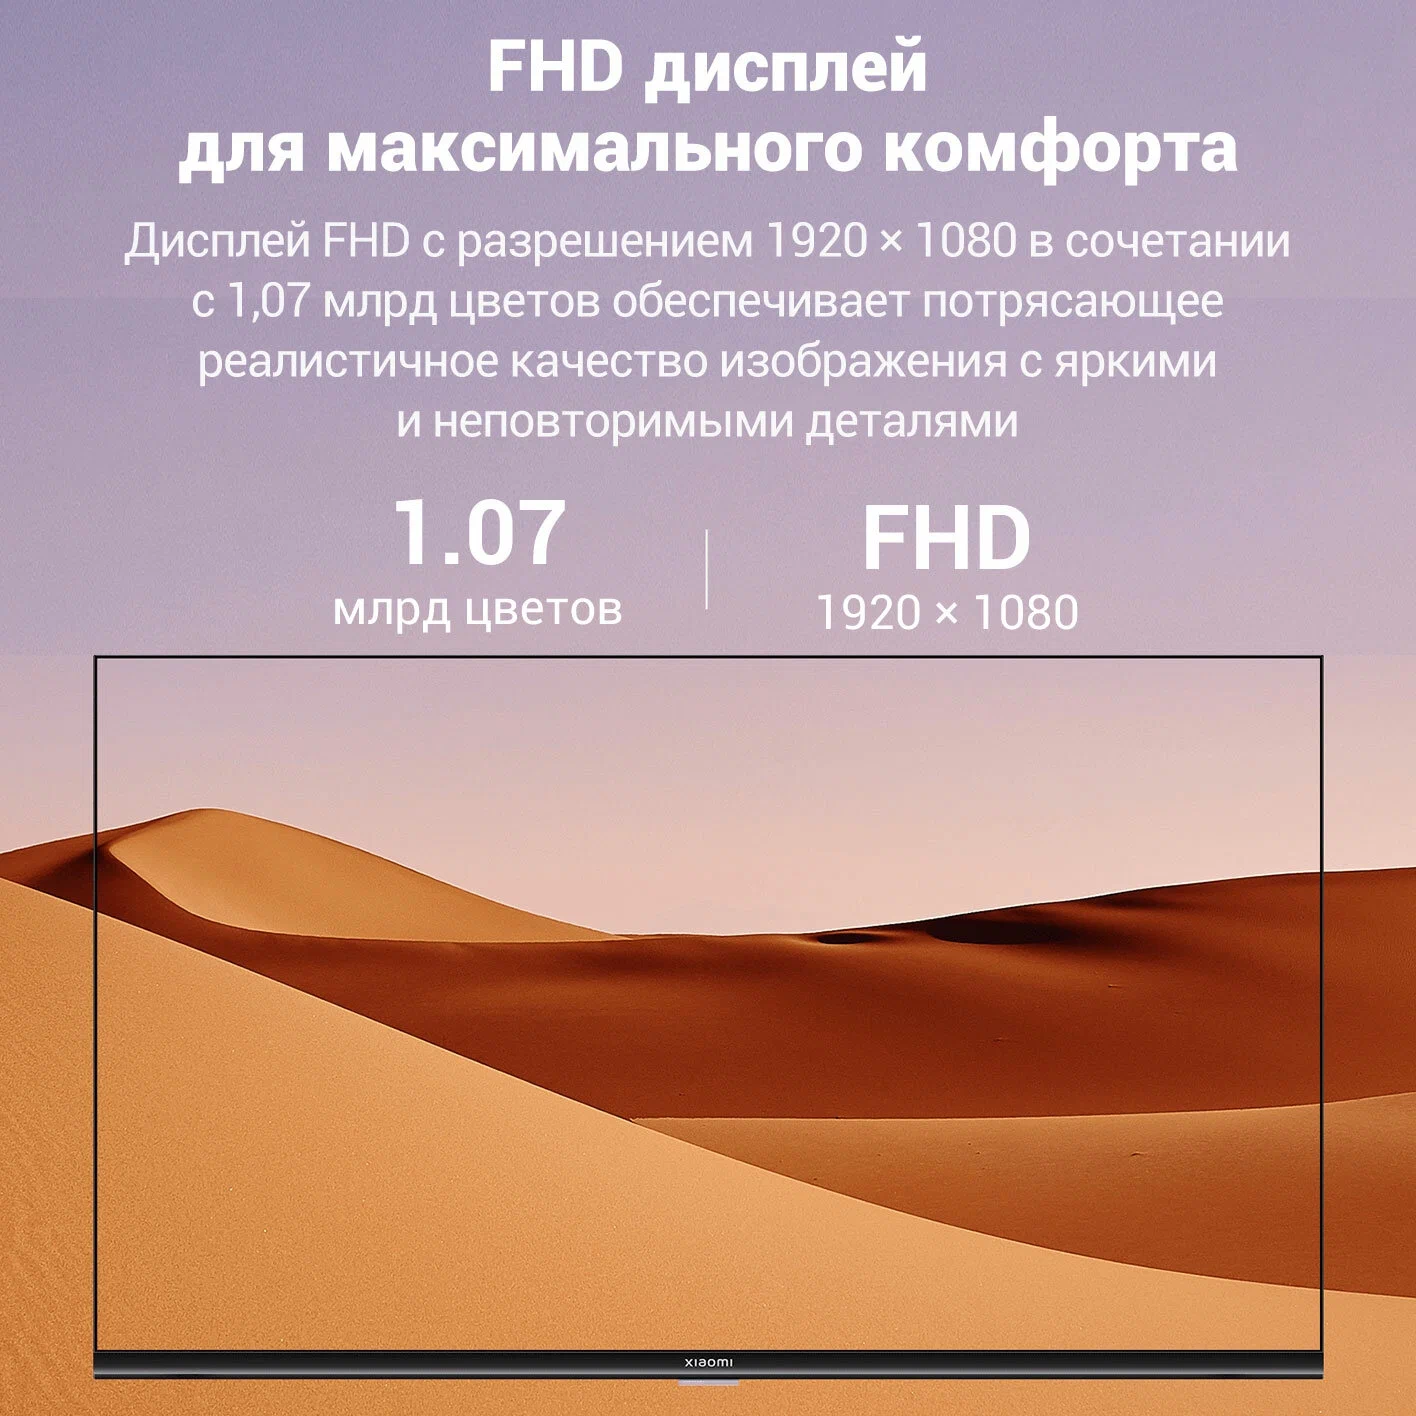 Телевизор Xiaomi mi led TV a2 43" FHD. Телевизор Ксиаоми l43m8-afru меню. Телевизор Ксиаоми l43m8-afru меню bynthtytn. Телевизор Ксиаоми l43m8-afru меню интернет Поисковая строка.